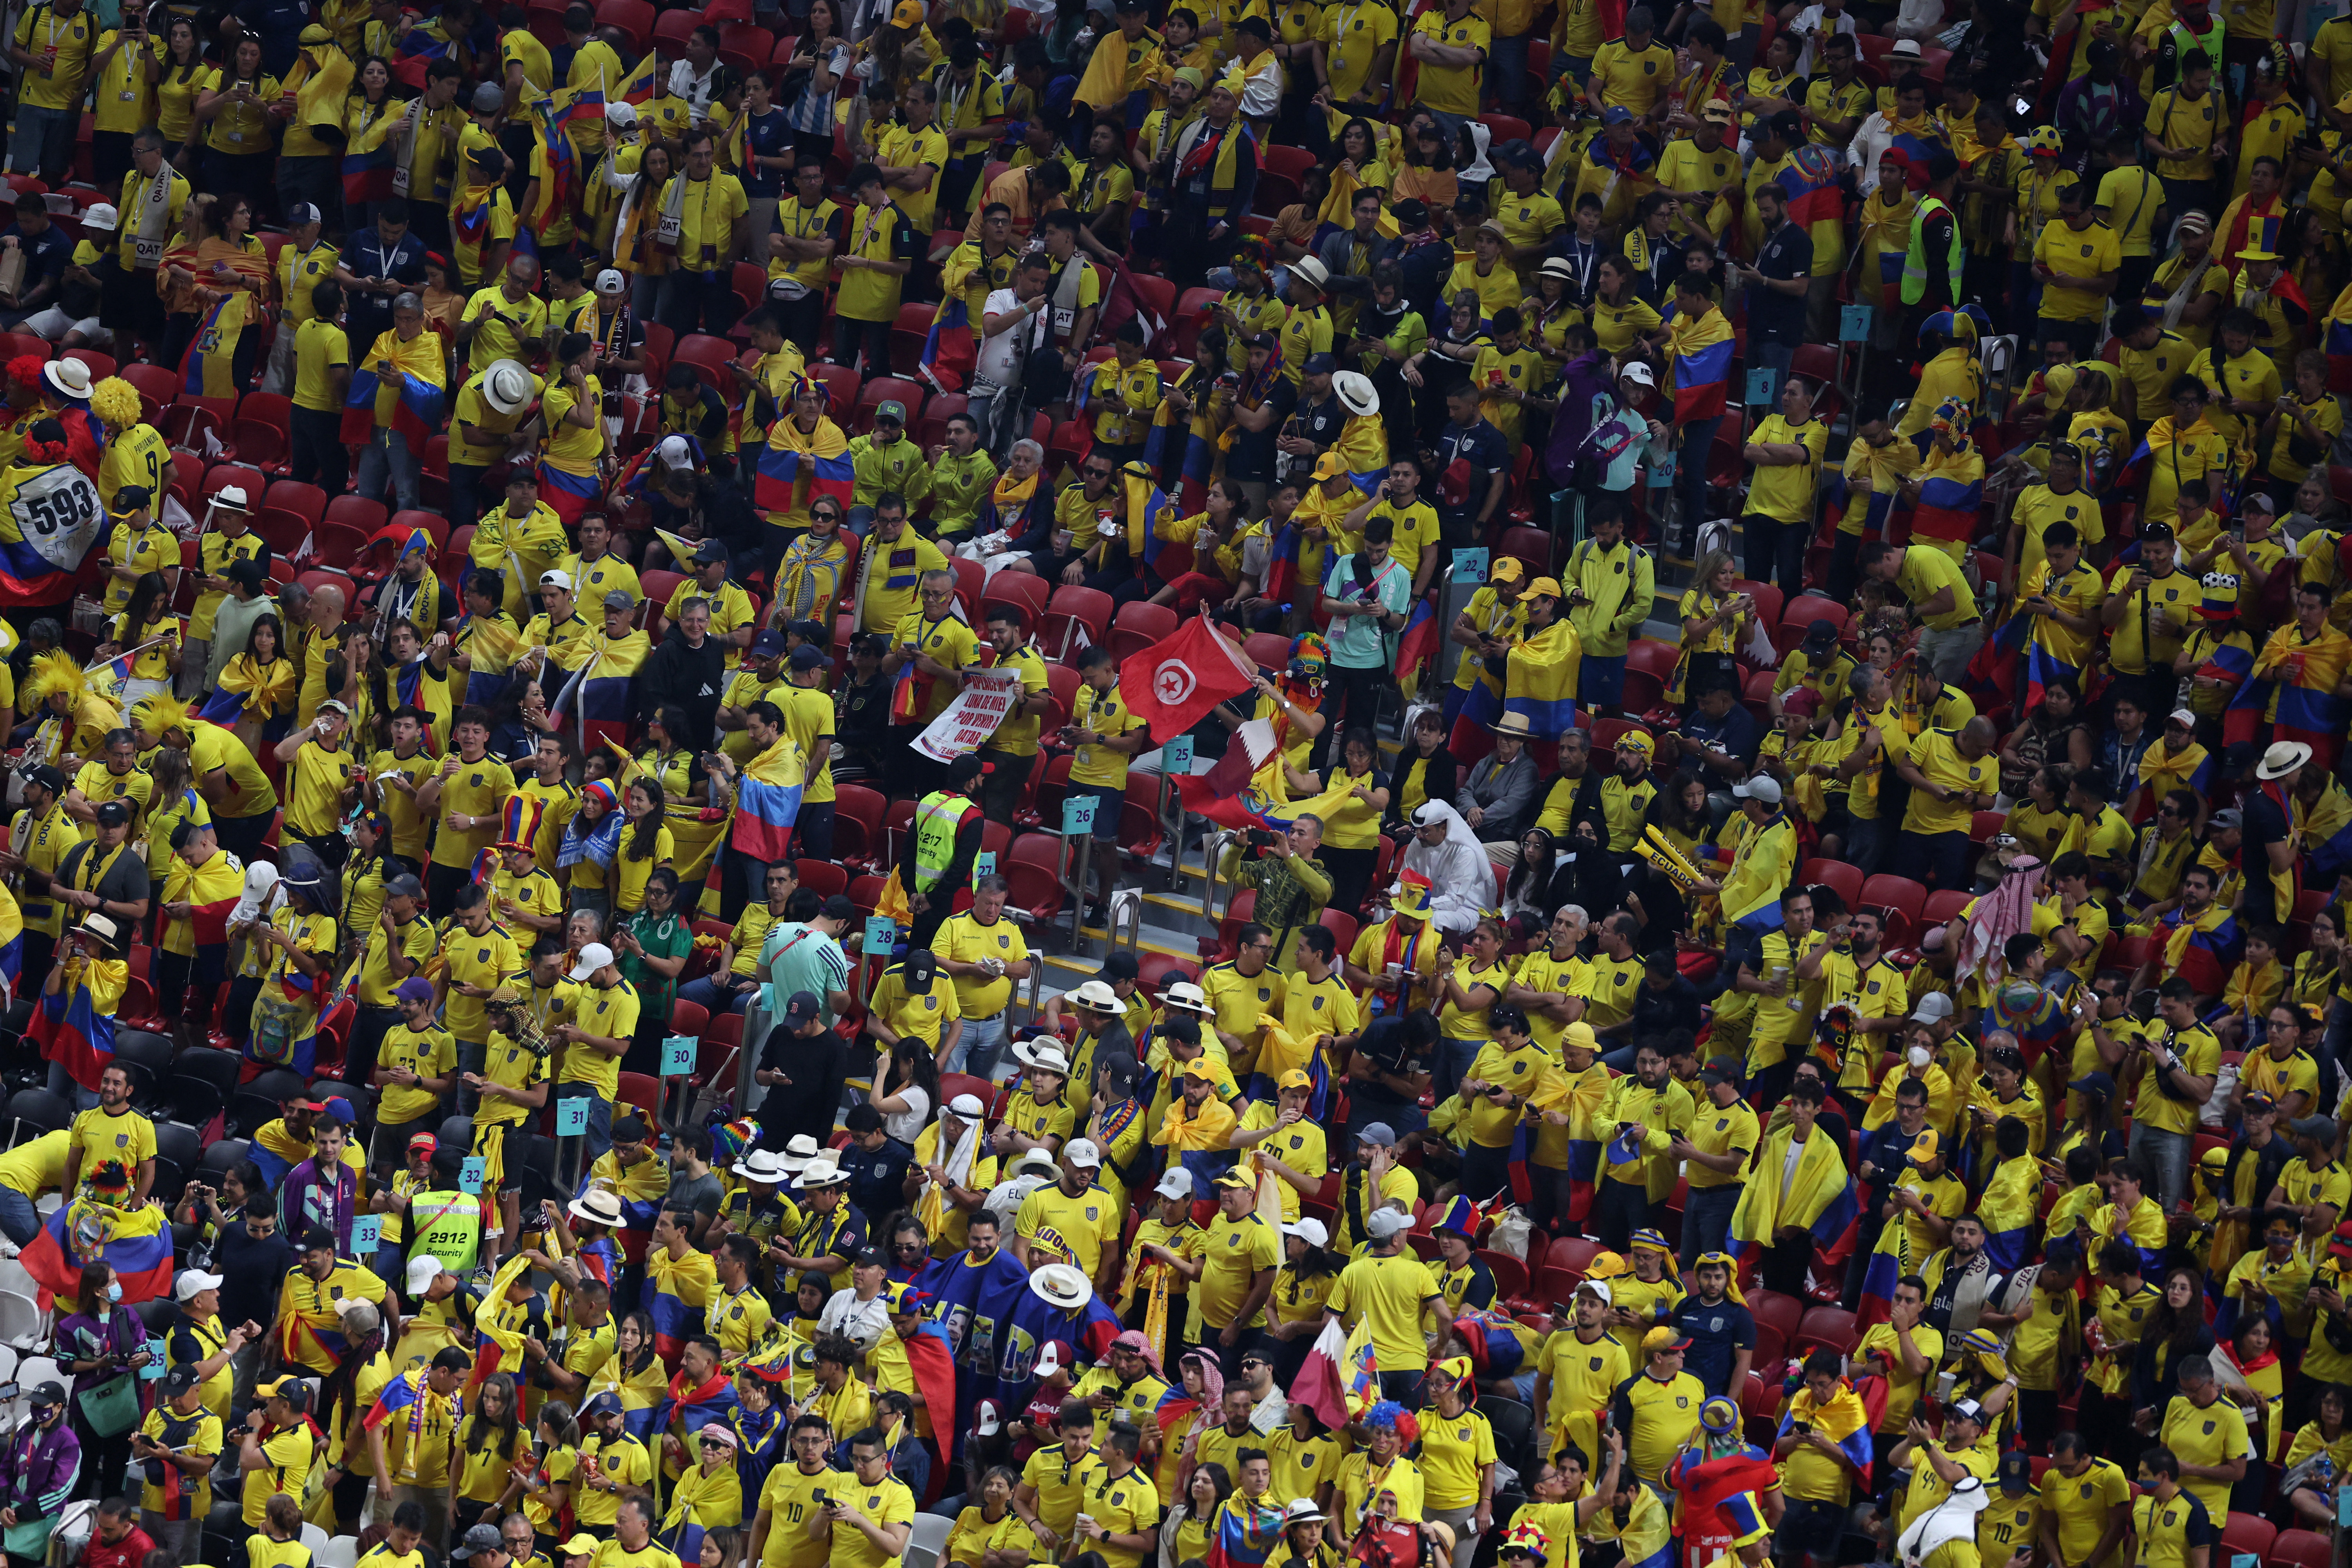 La parcialidad de Ecuador ya dentro del Estadio Al Bayt de Jor. Las gradas empezaron a llenarse desde temprano. La hora local del comienzo del partido será a las 19 horas (REUTERS/Amr Abdallah Dalsh)